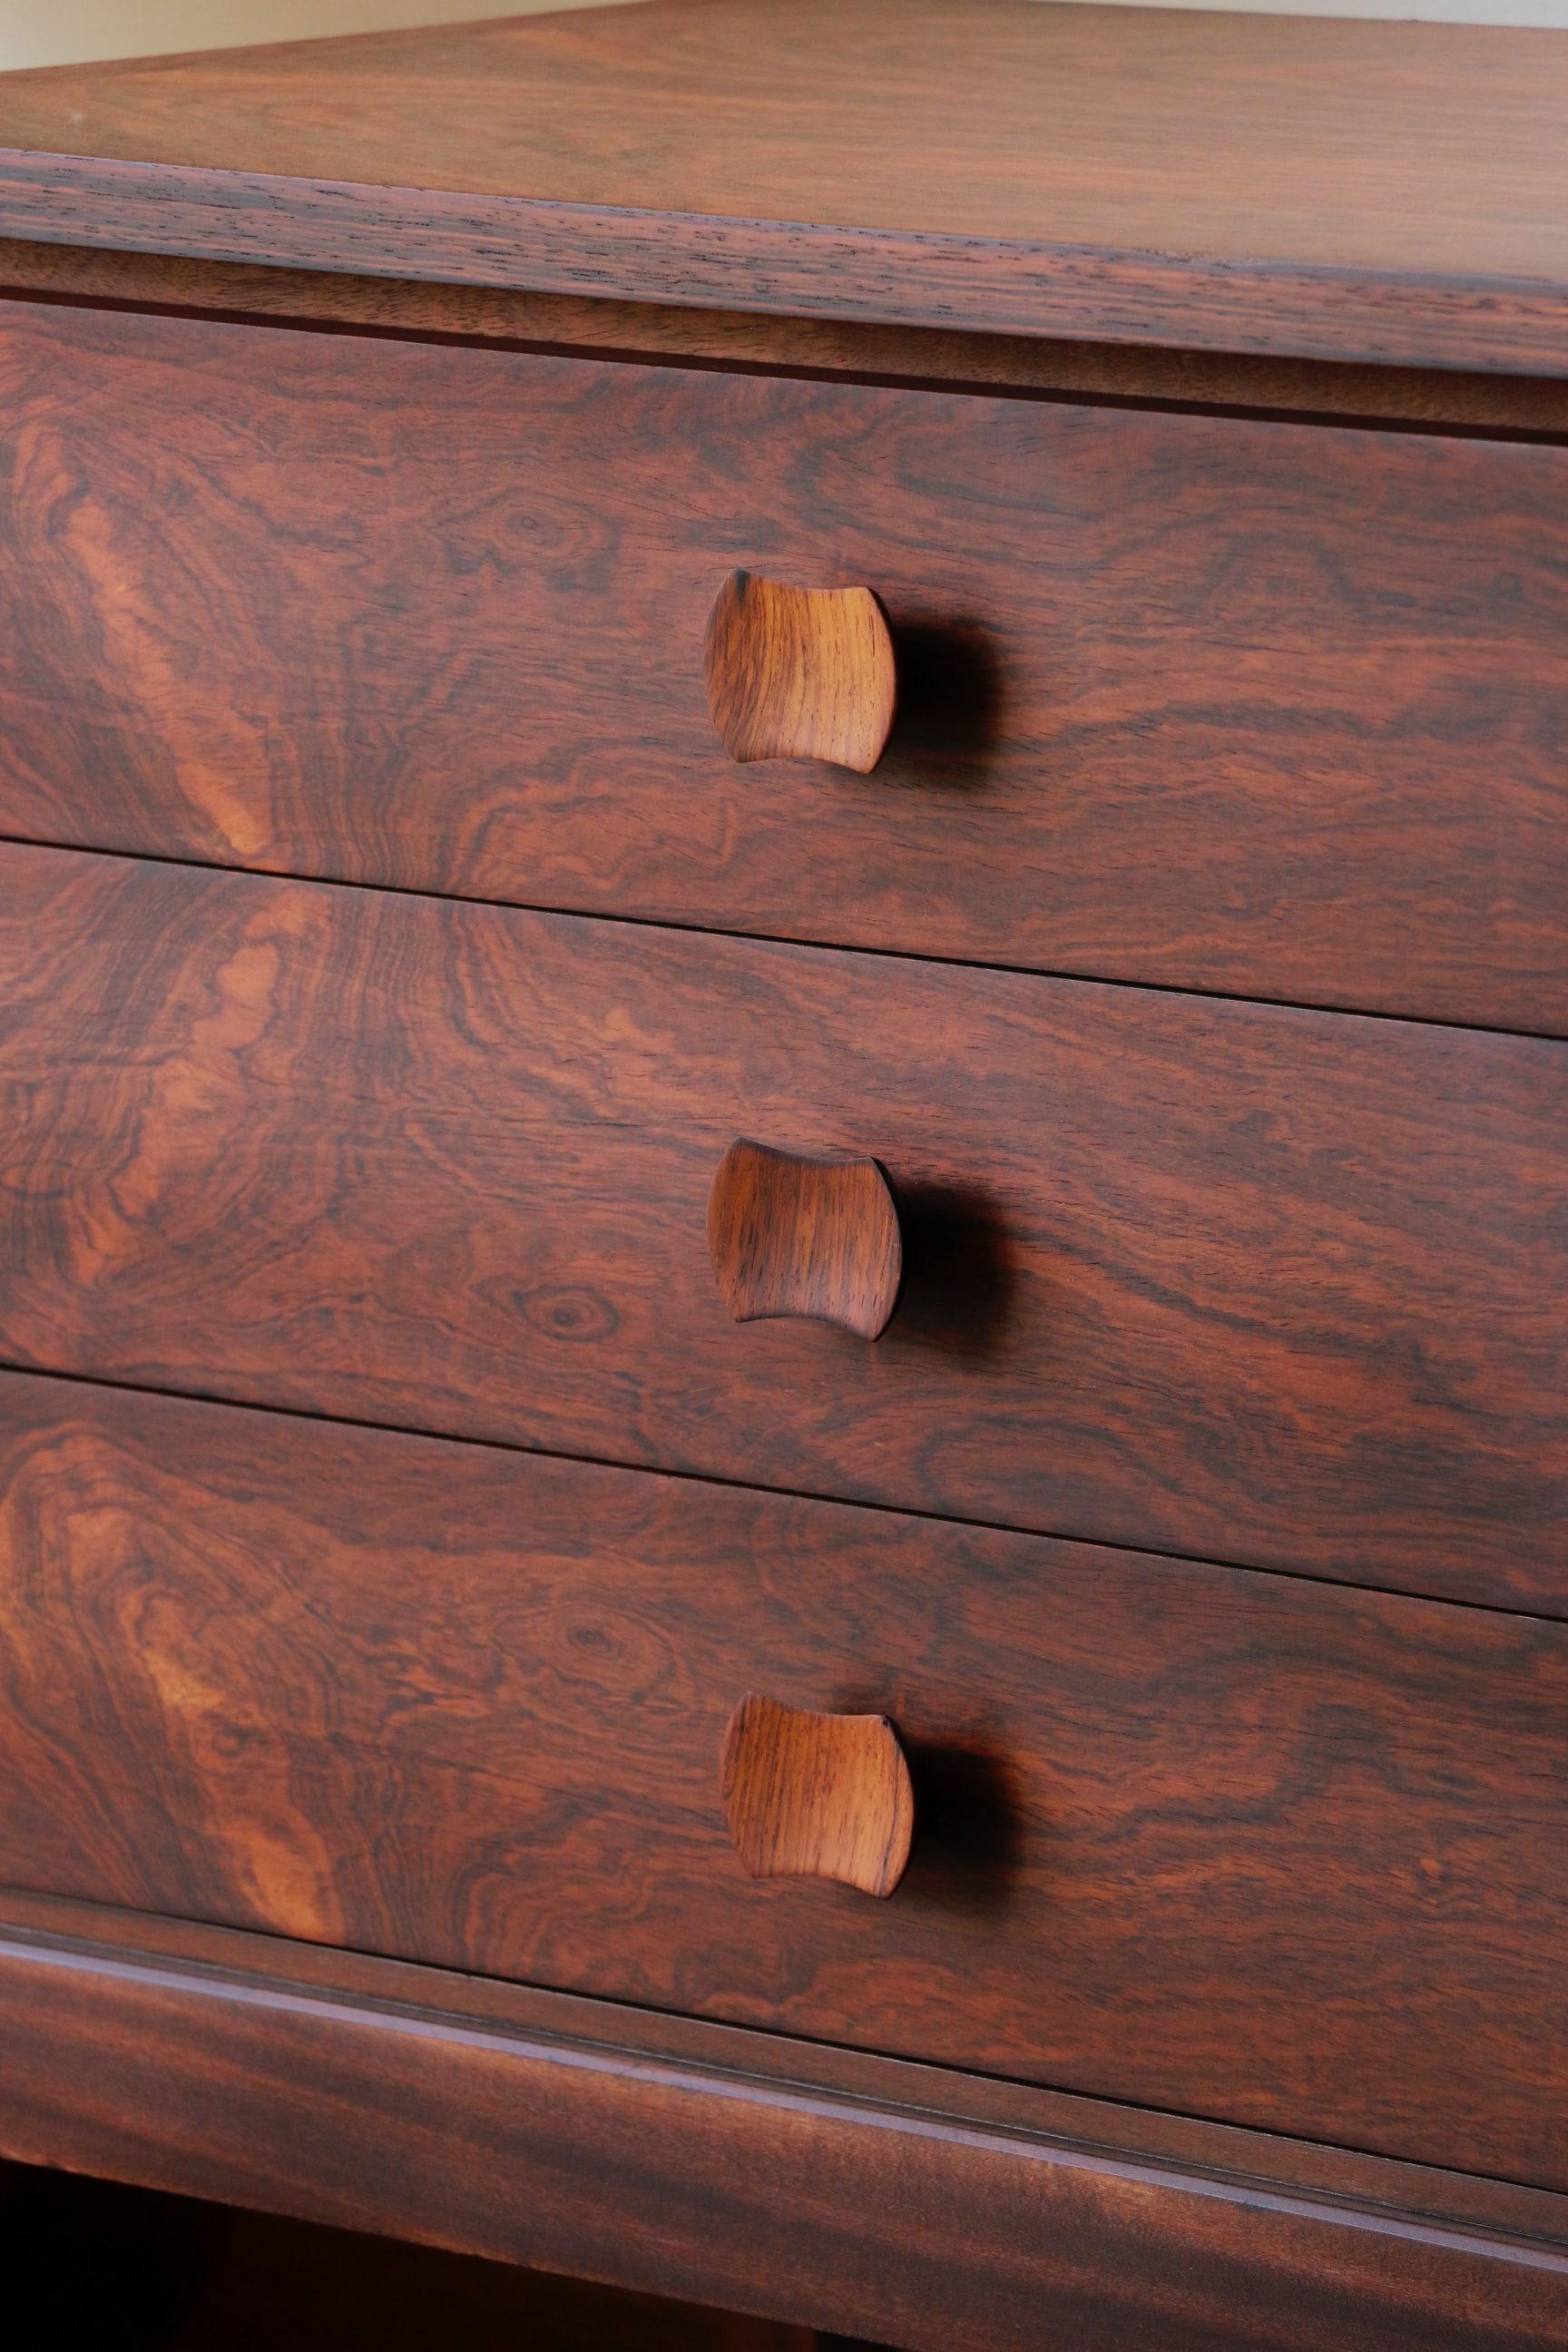 Magnifique commode 6 tiroirs en palissandre datant des années 60.

Son sublime veinage lui donne un charme certain et son format pratique lui permet de se glisser partout.
Le coulissement des tiroirs se fait parfaitement.
La couleur est brun foncé